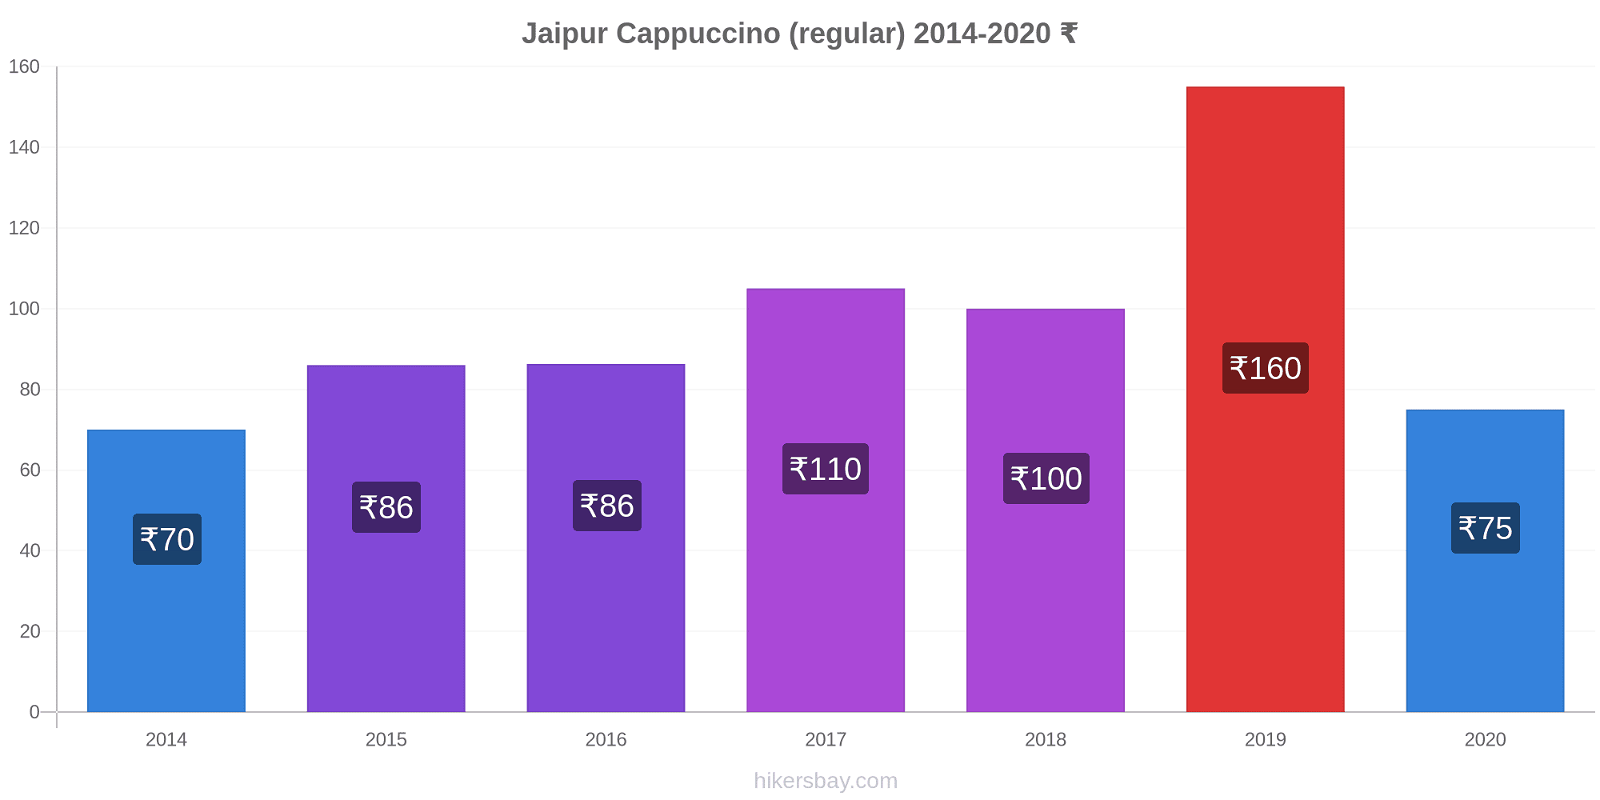 Jaipur variação de preço Capuccino (regular) hikersbay.com